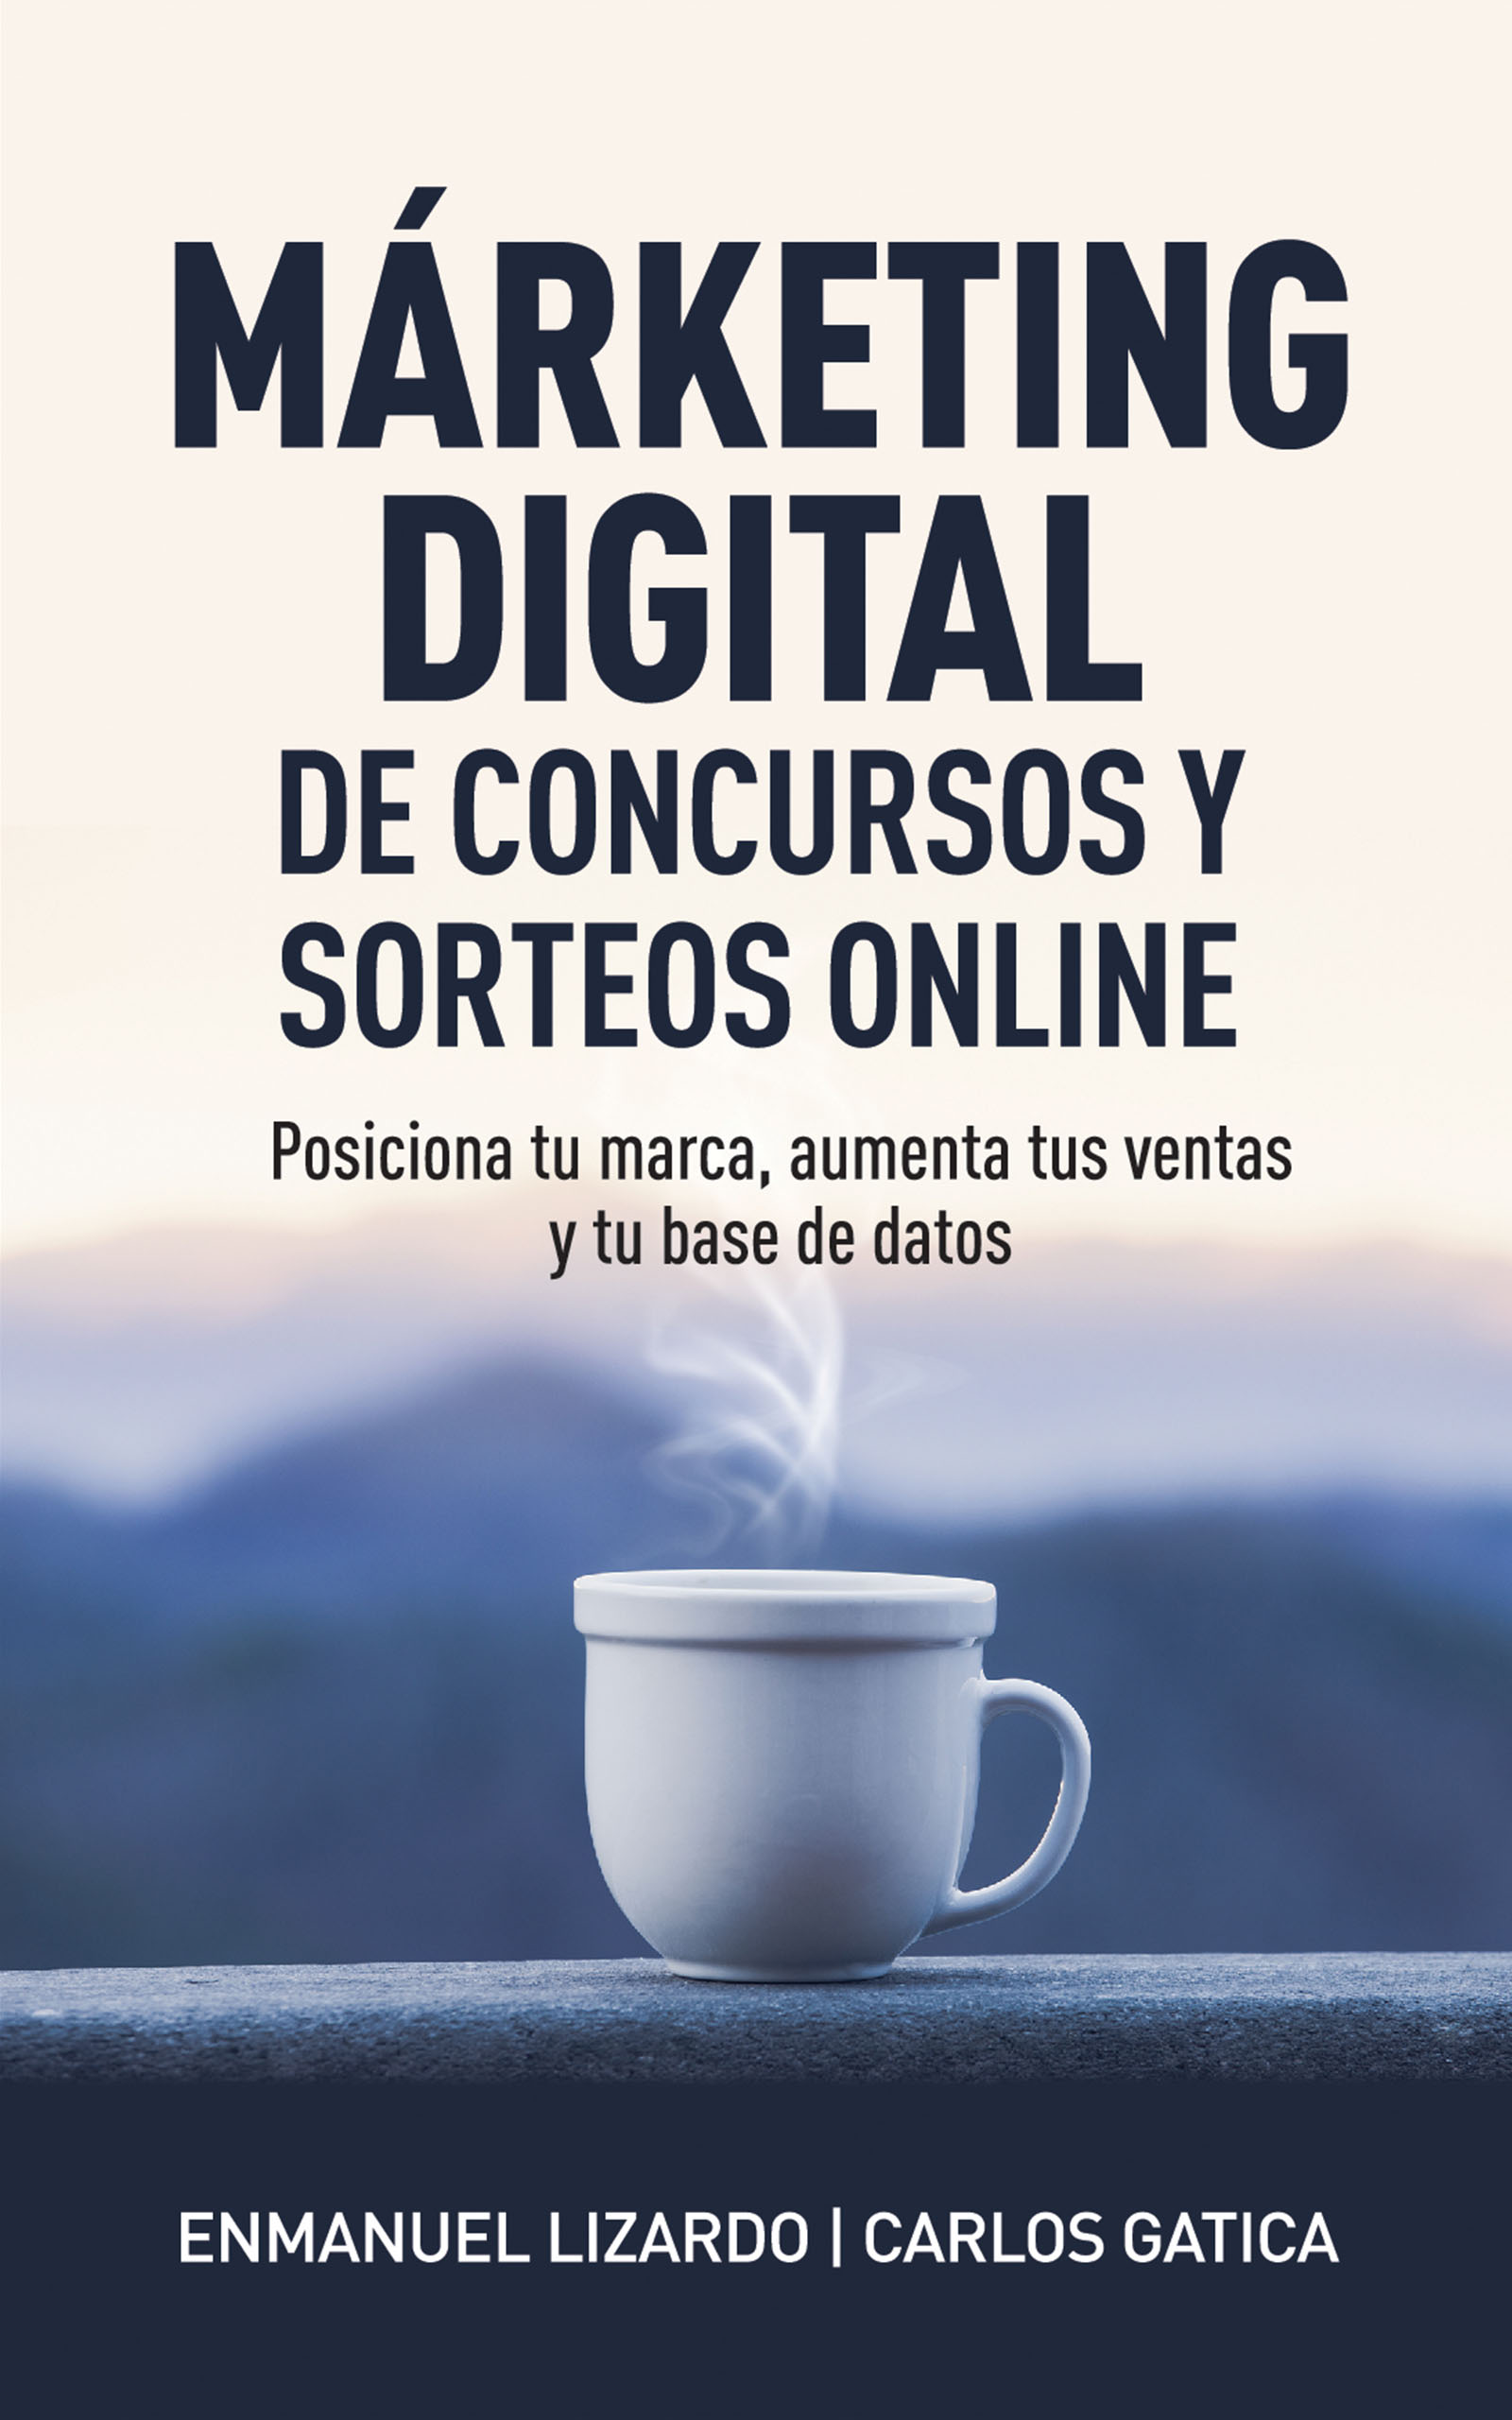 Márketing digital de concursos y sorteos online, de Enmanuel Lizardo y Carlos Gatica